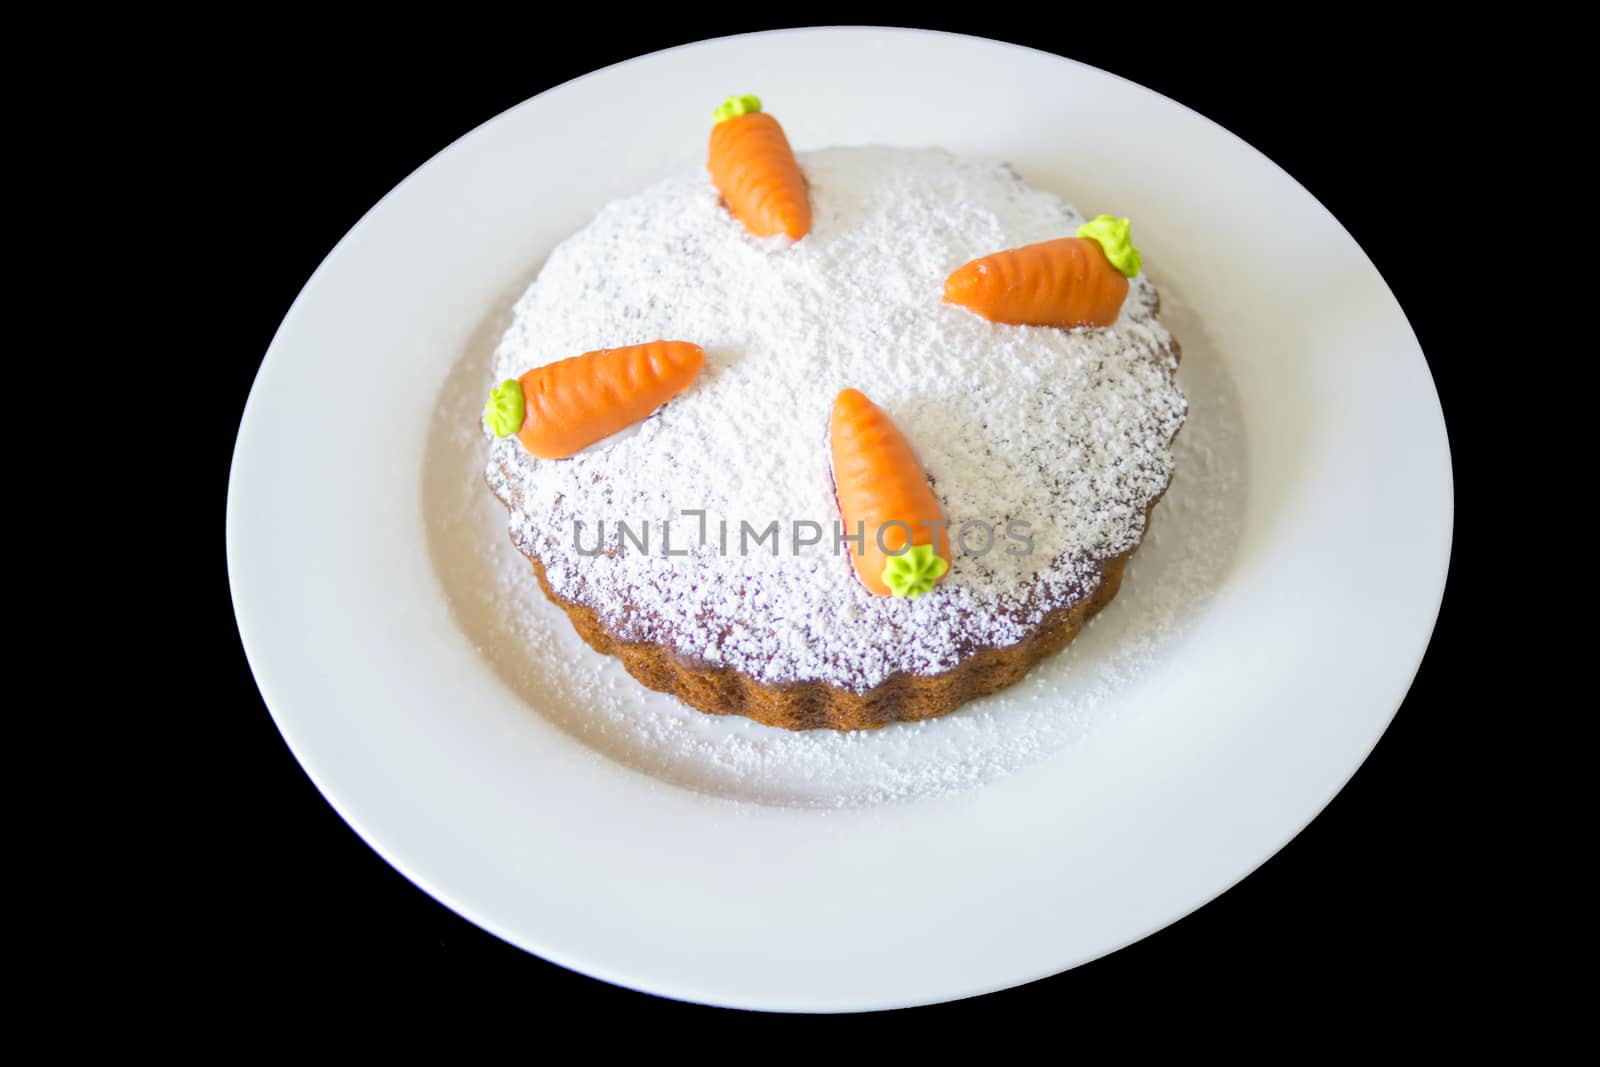 Fresh carrot cake on white plate Carrot cake